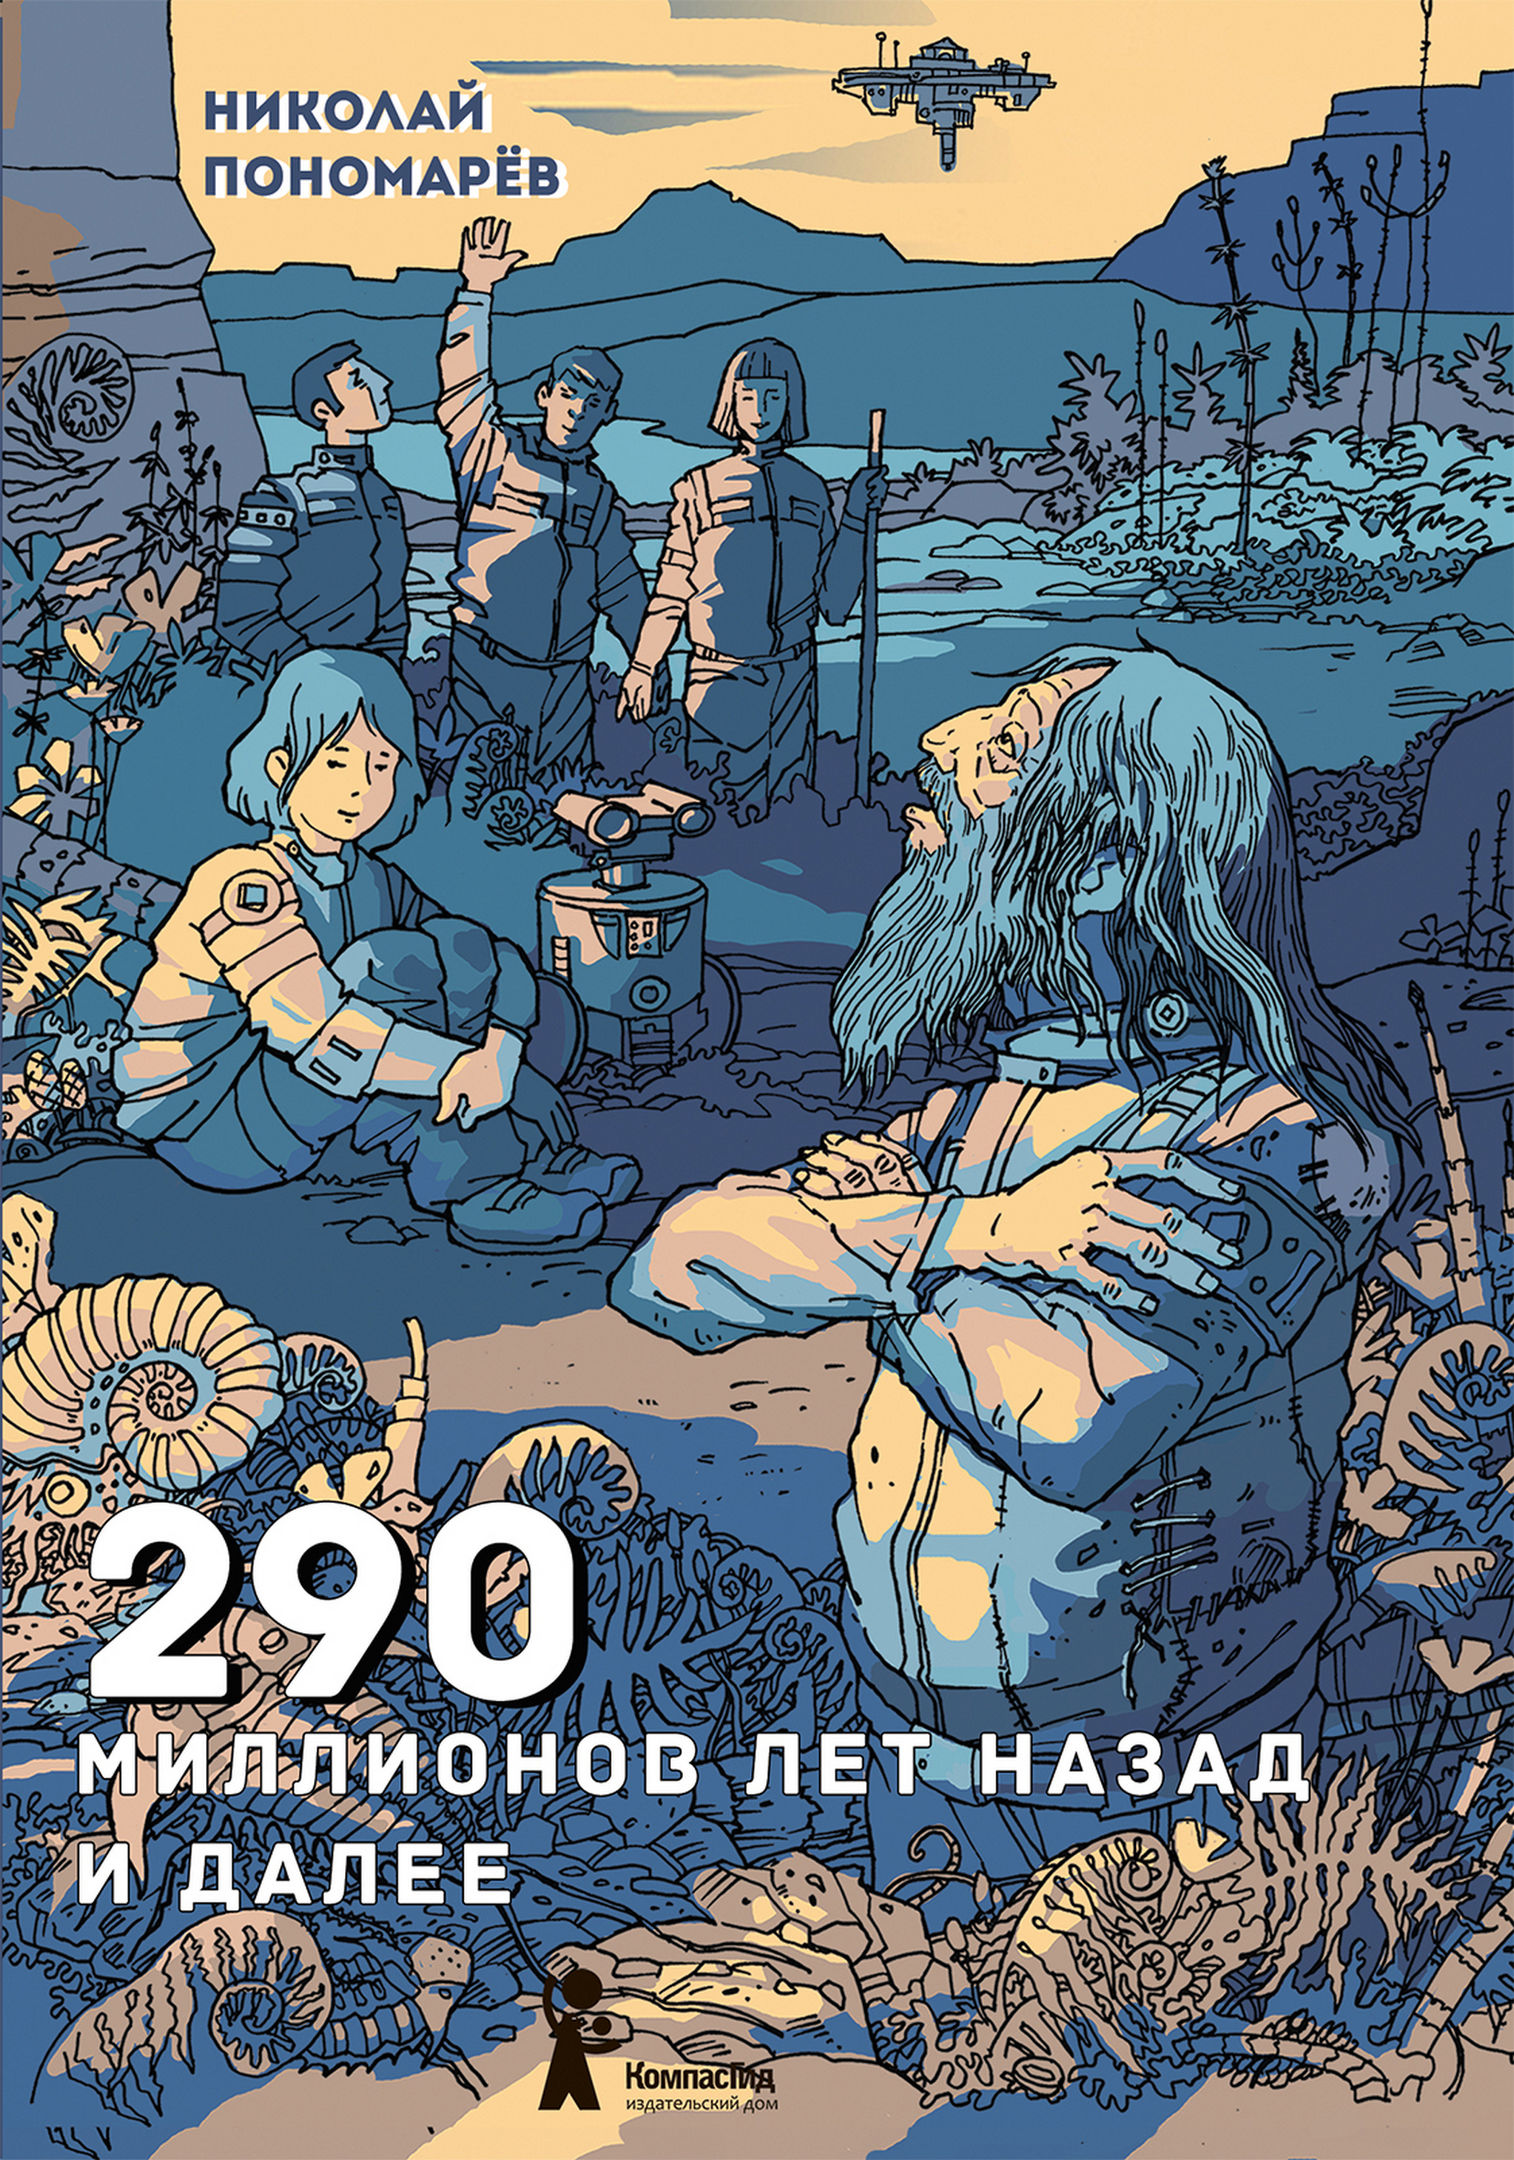 Пономарев Николай Анатольевич - 290 миллионов лет назад и далее - 2021